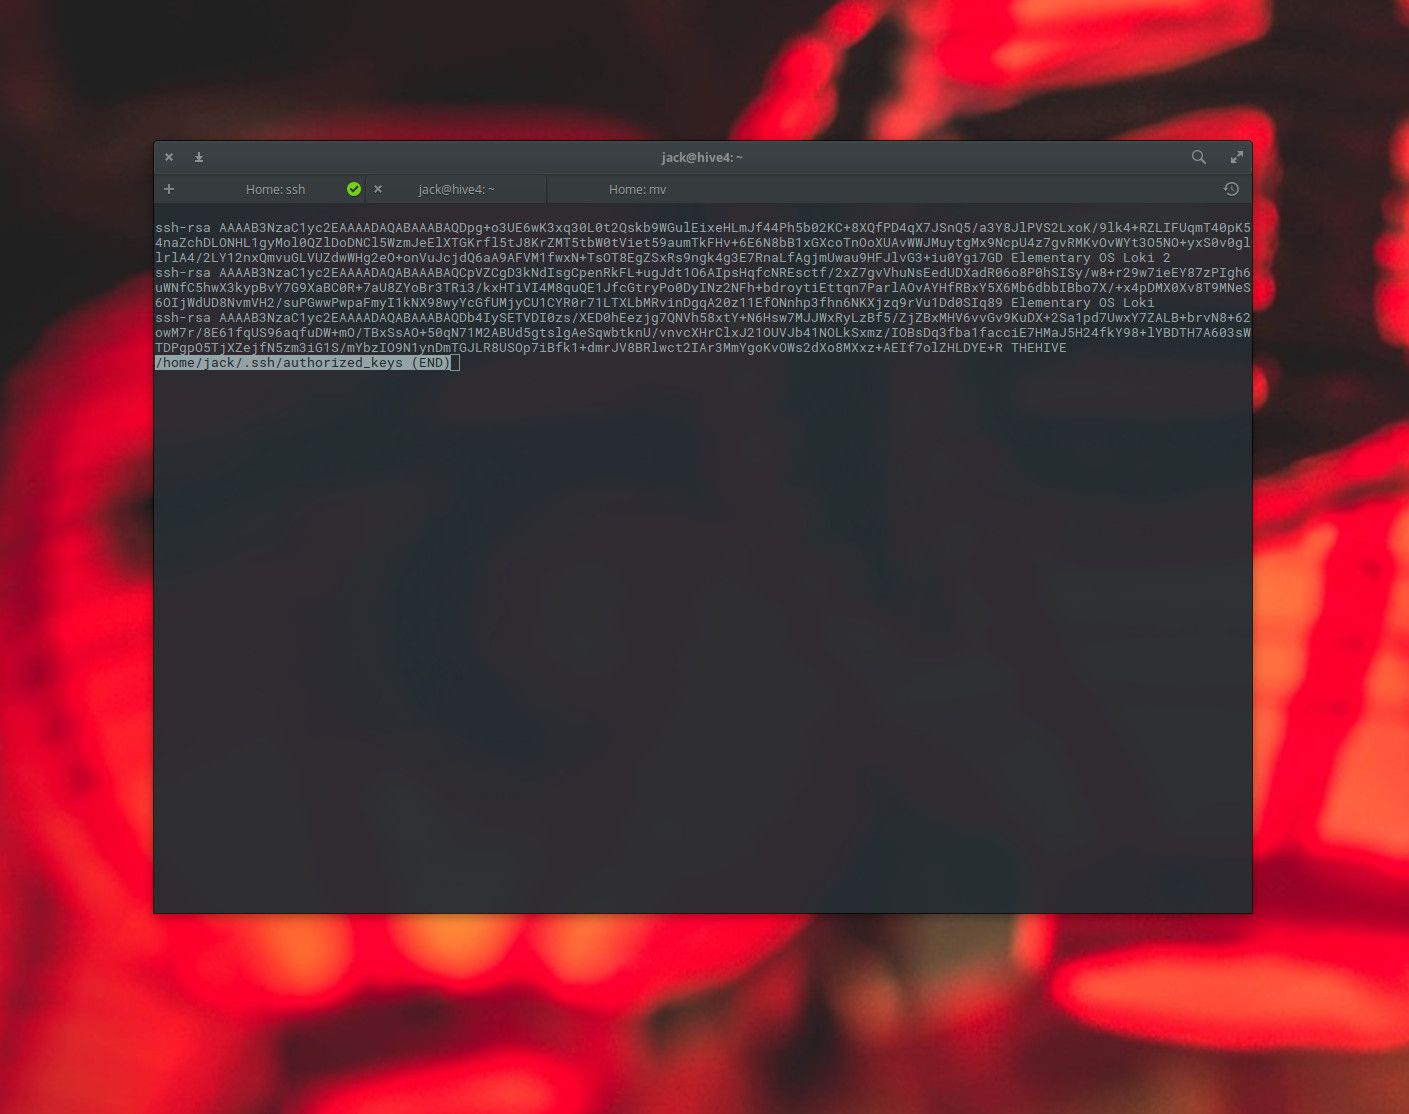 Snímek obrazovky souboru authorized_keys nalezeného v Linuxu.